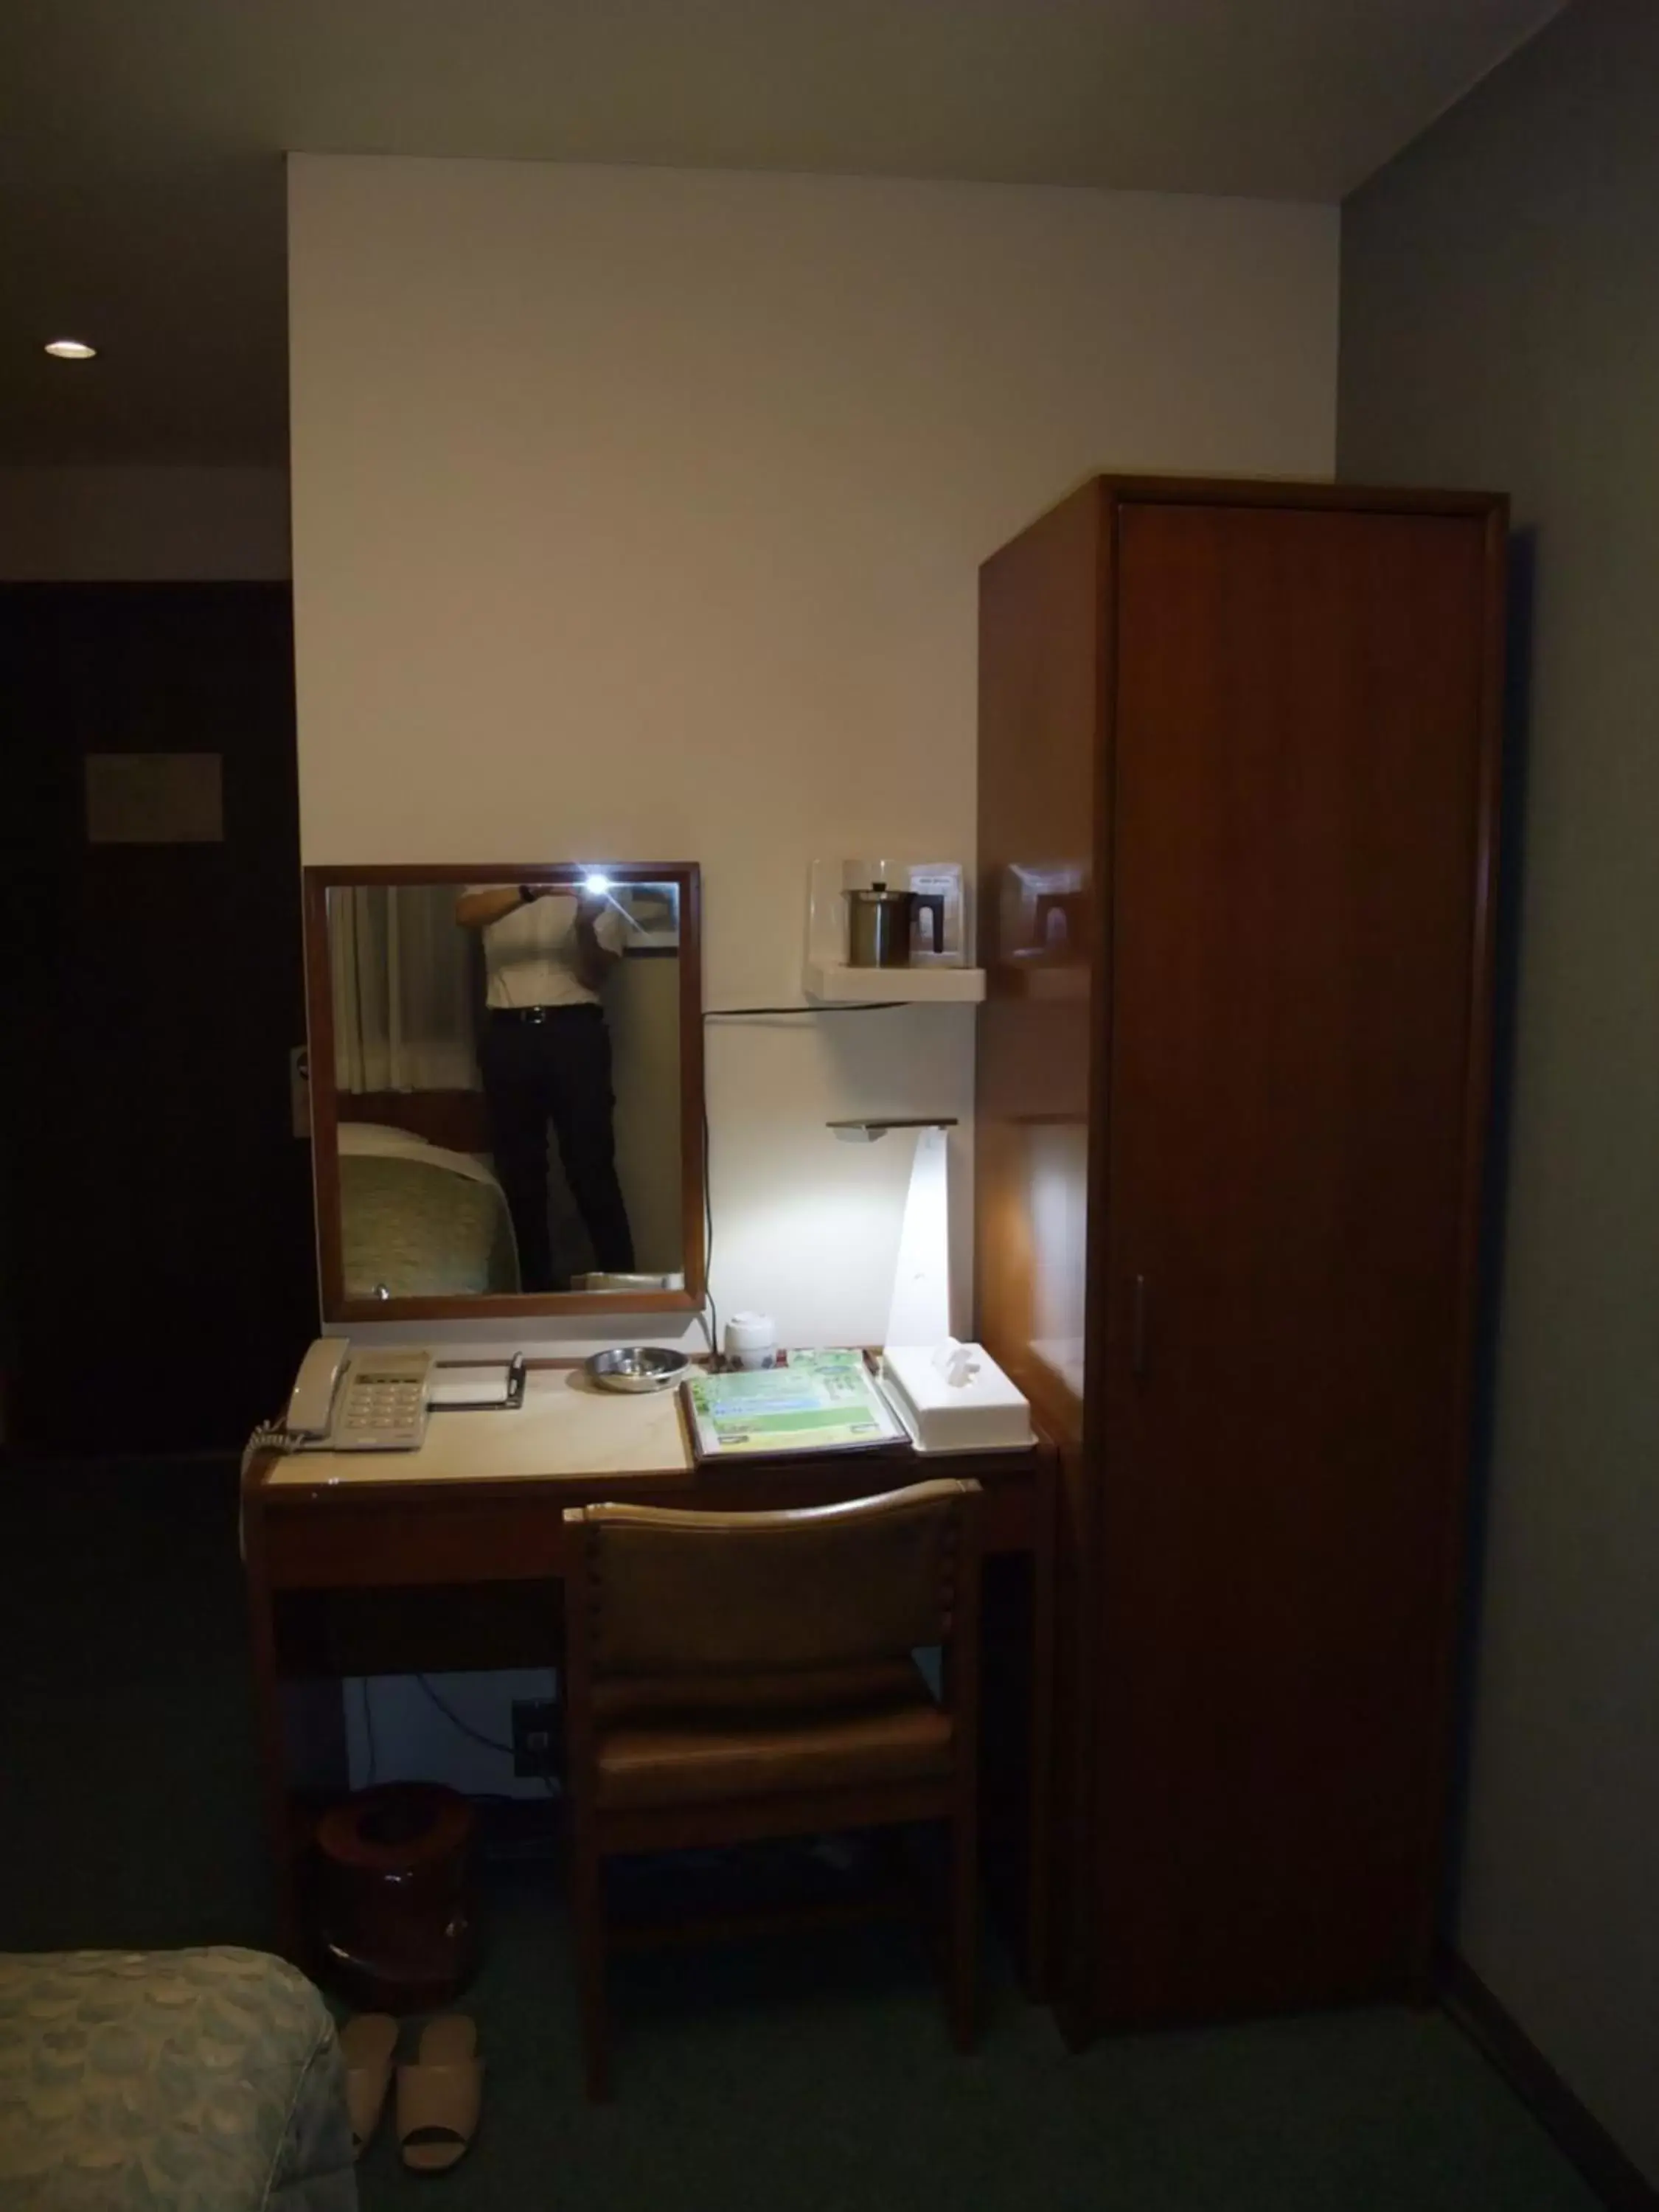 Photo of the whole room, Bathroom in Hotel Tateshina